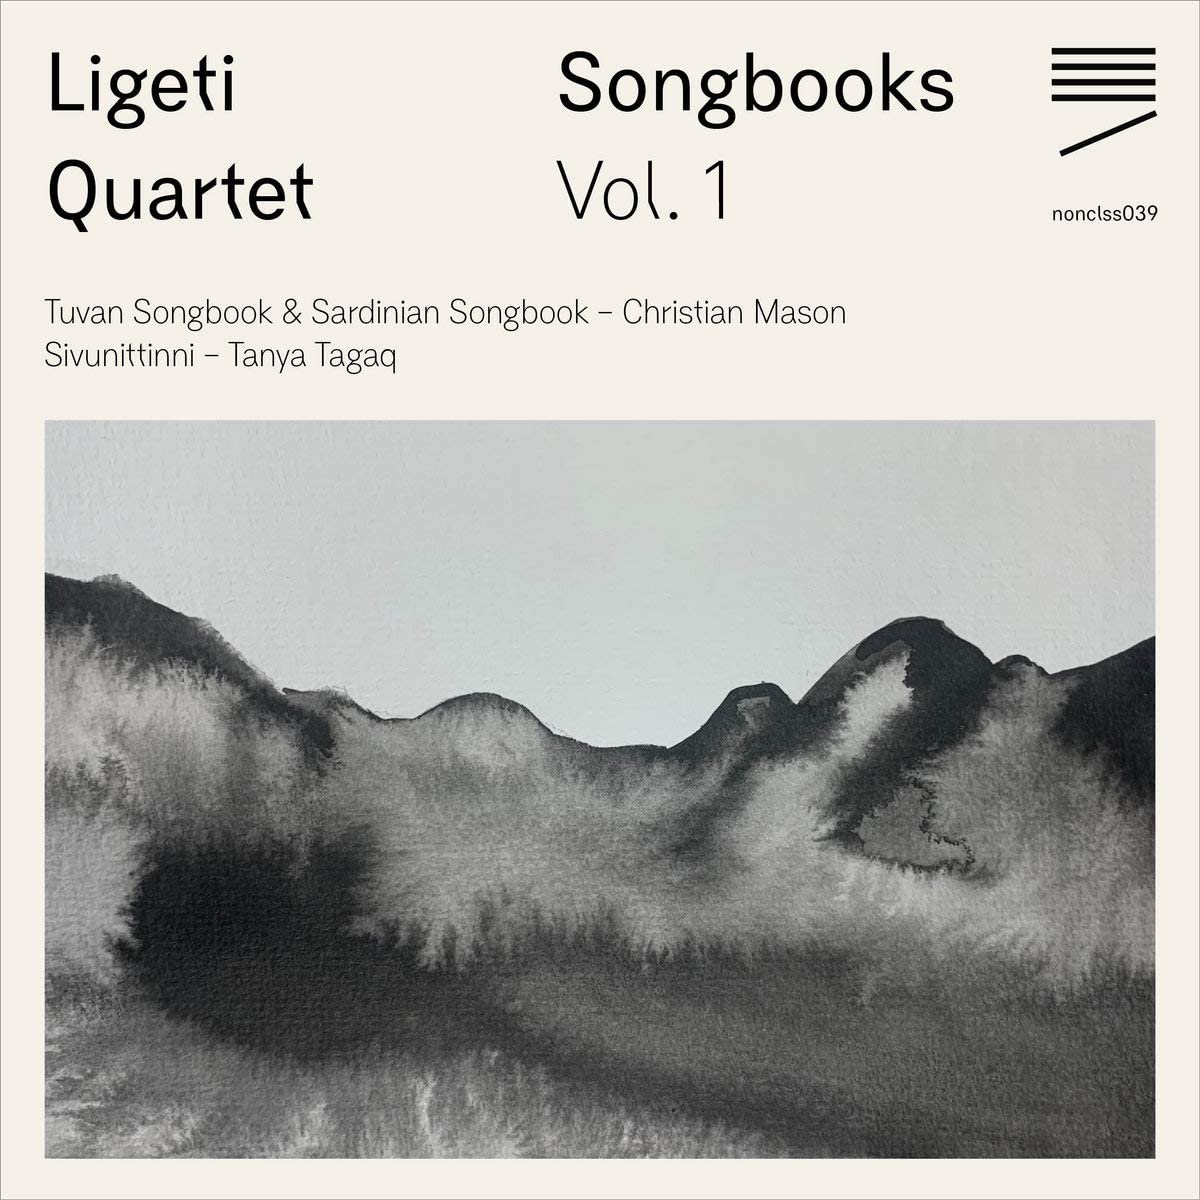 Ligeti Quartet Songbook